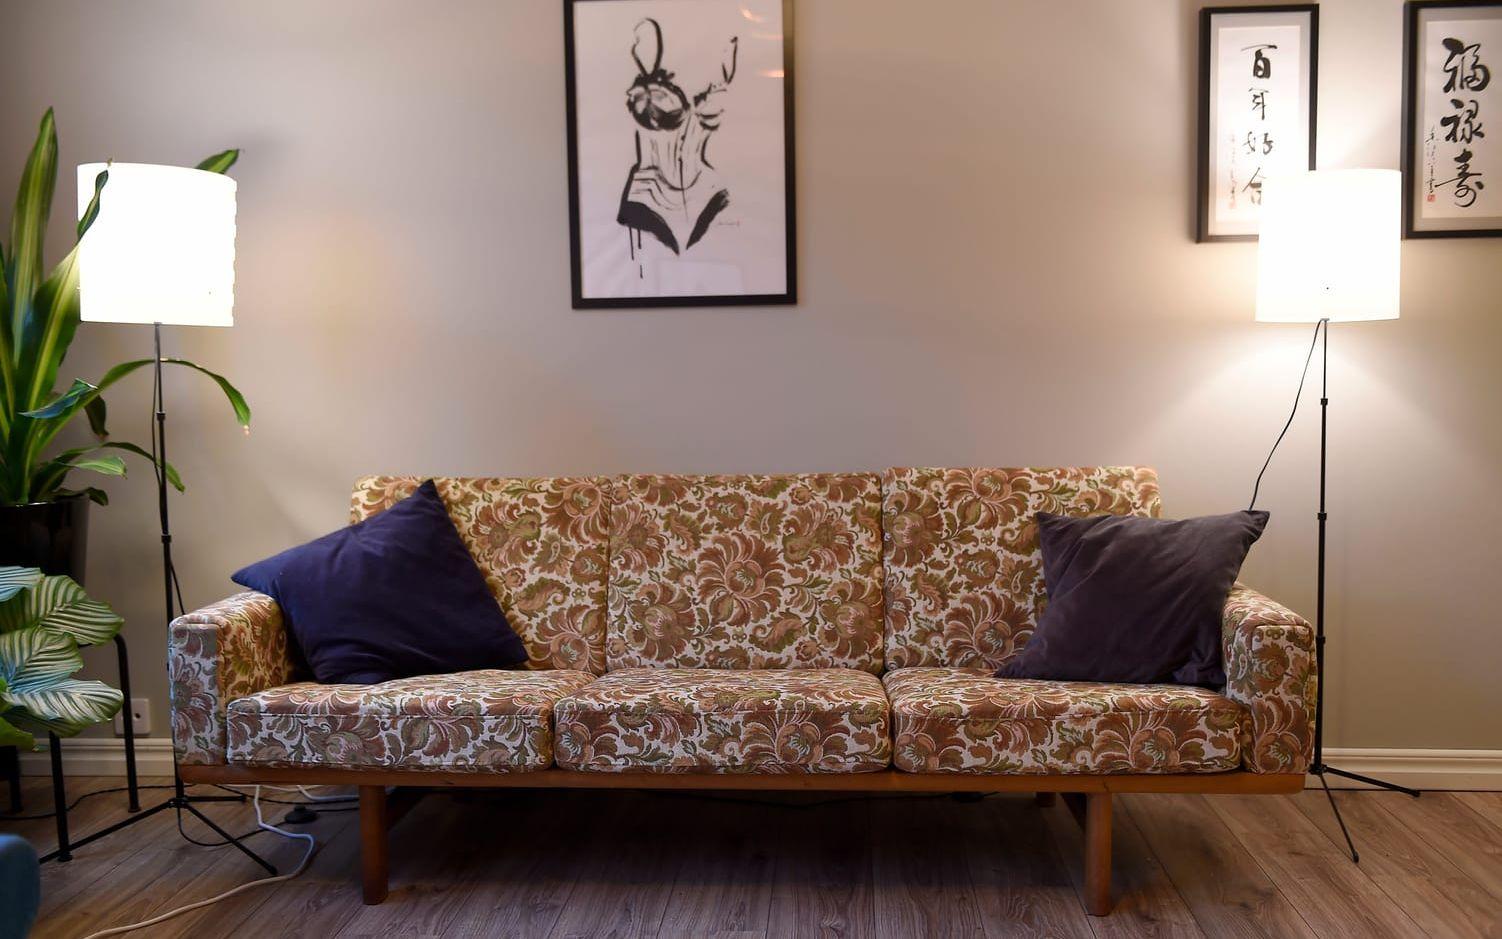 De stora sofforna från villan fick inte plats i det mindre boendet, så Maria och Kristoffer tog chansen att leta upp en ny, mer unik soffa. Nu är den blommiga, antika soffan en favorit i hemmet. Foto: Björn Lindgren/TT